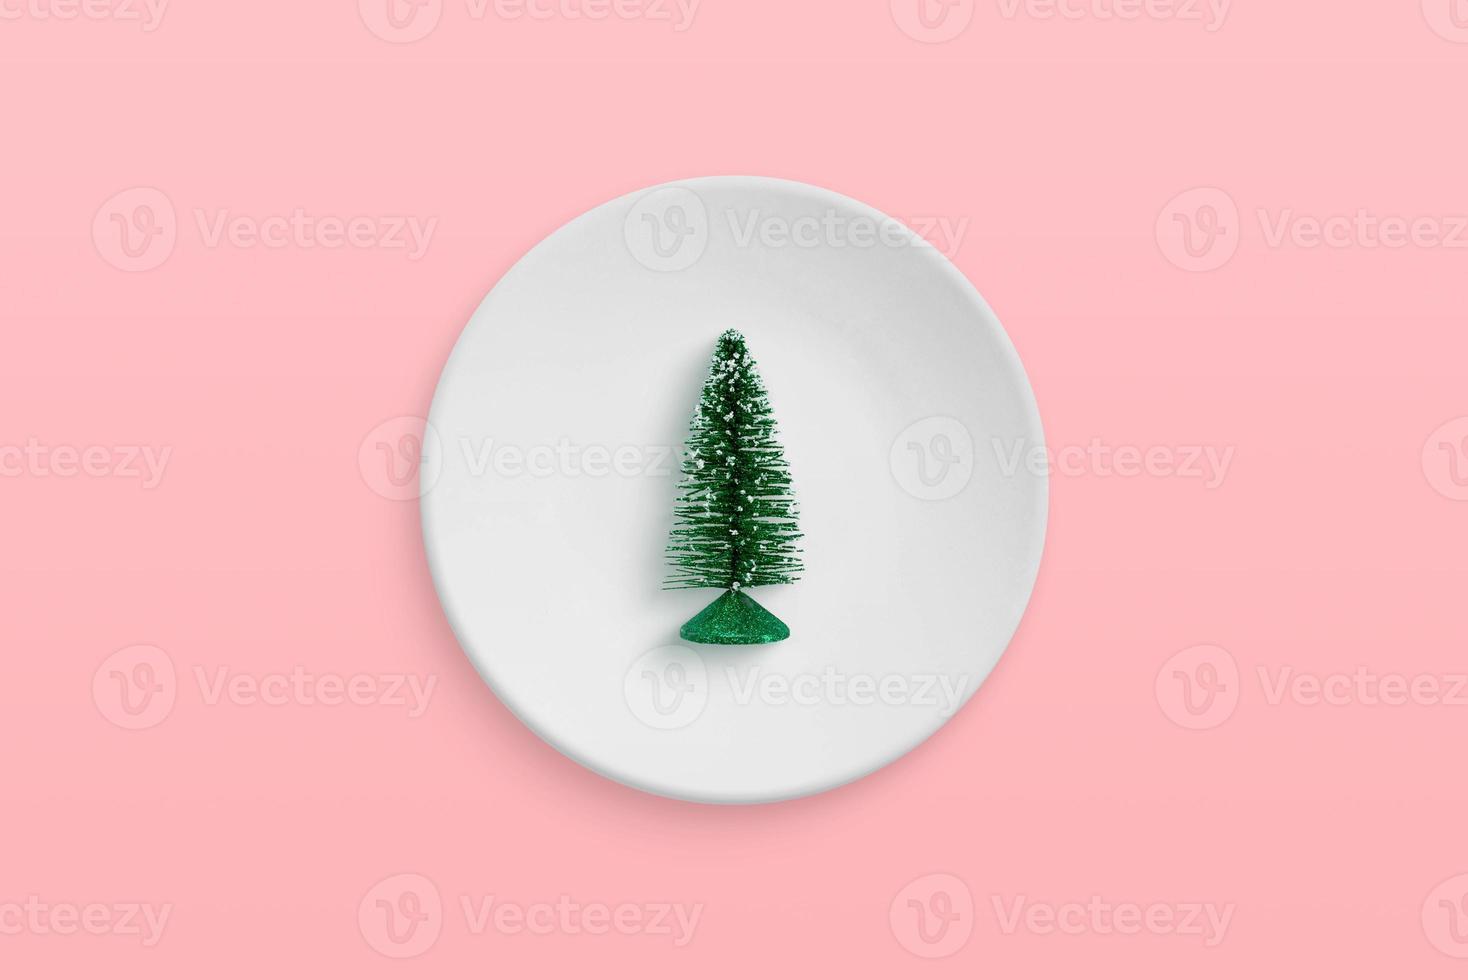 kleine kerstboom in een bord. minimaal concept voor kerstviering foto